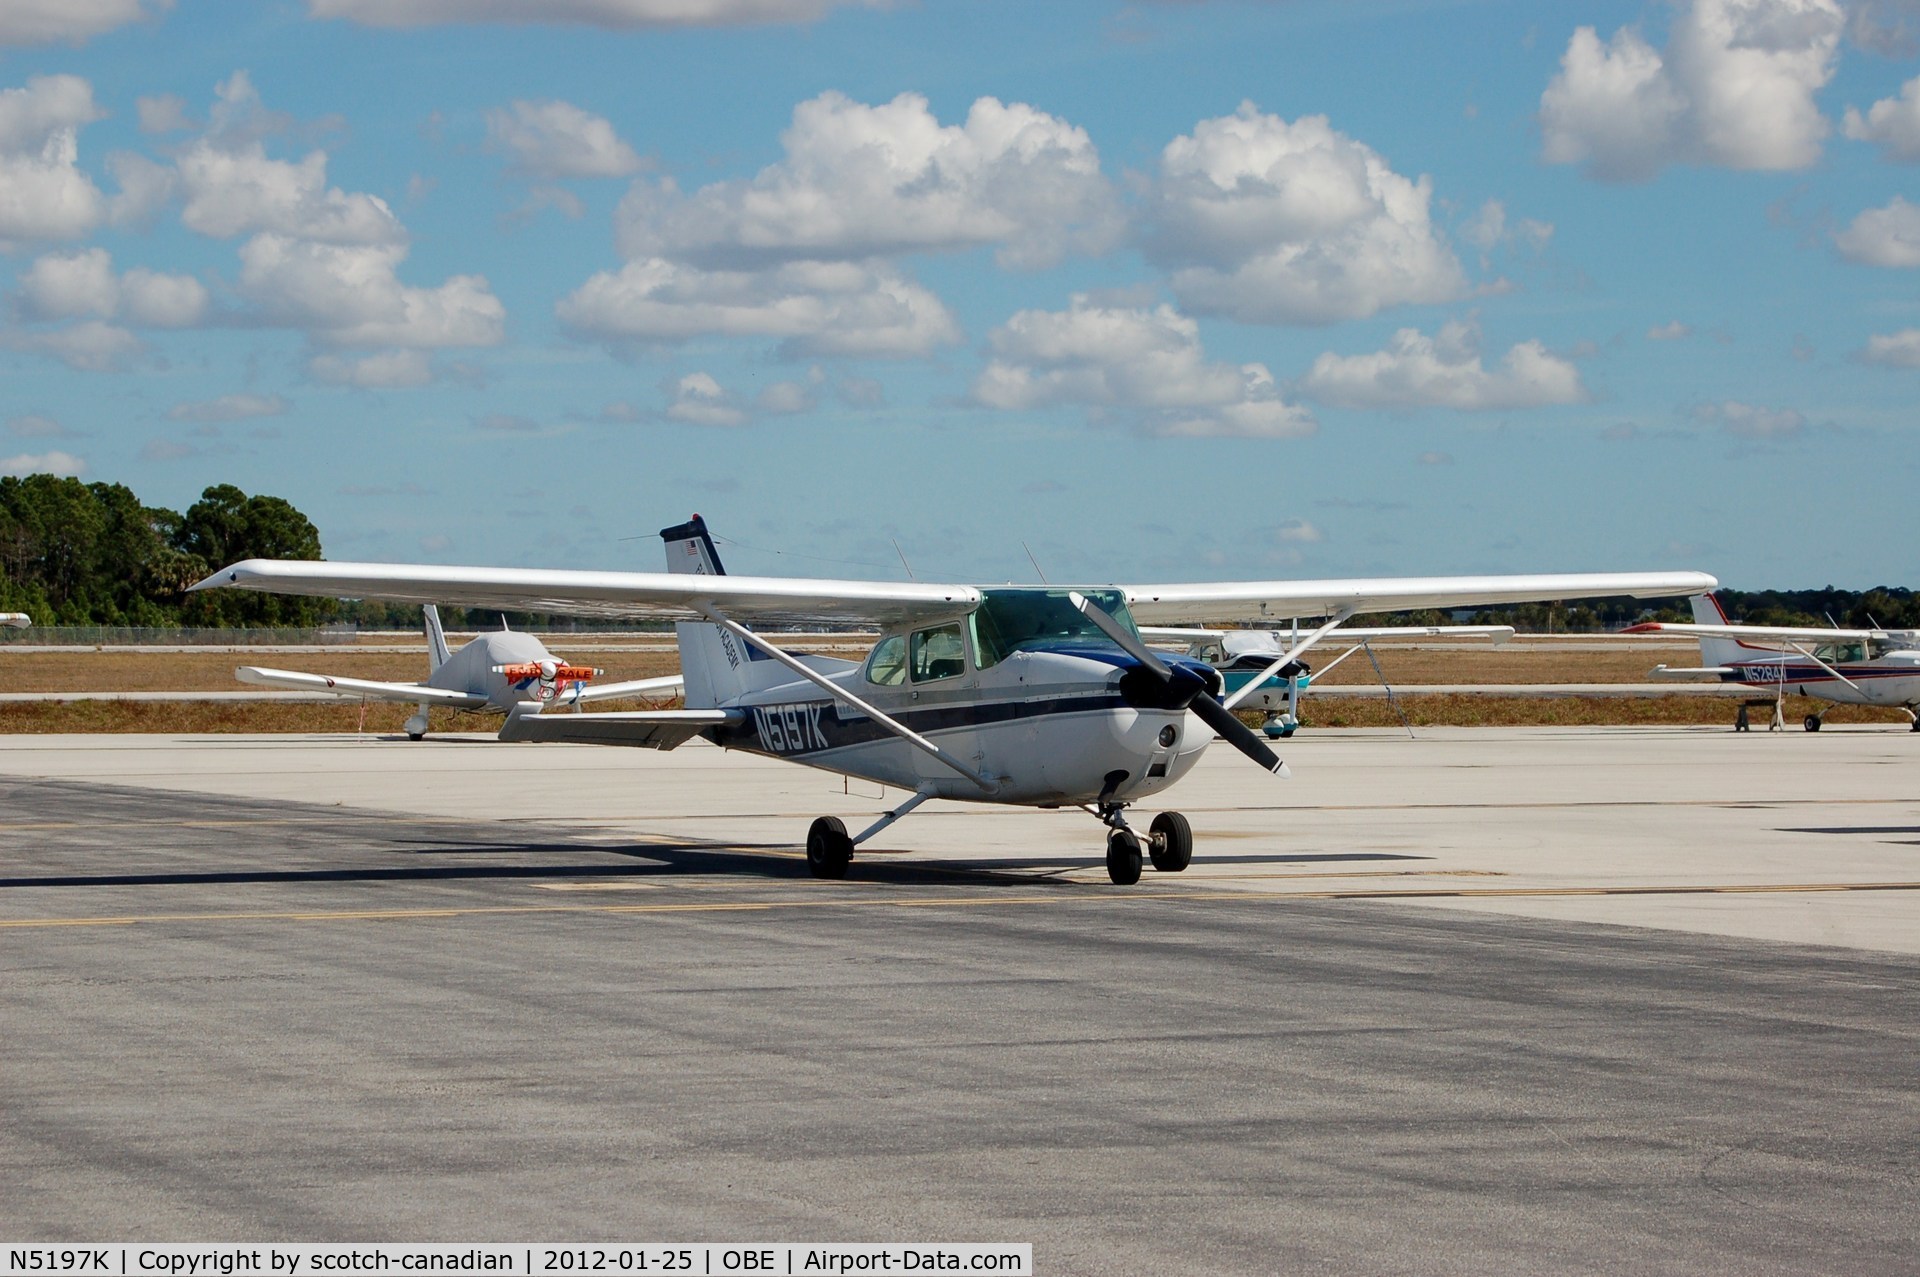 N5197K, 1980 Cessna 172N C/N 17274007, 1980 Cessna 172N N5197K at Okeechobee County Airport, Okeechobee, FL